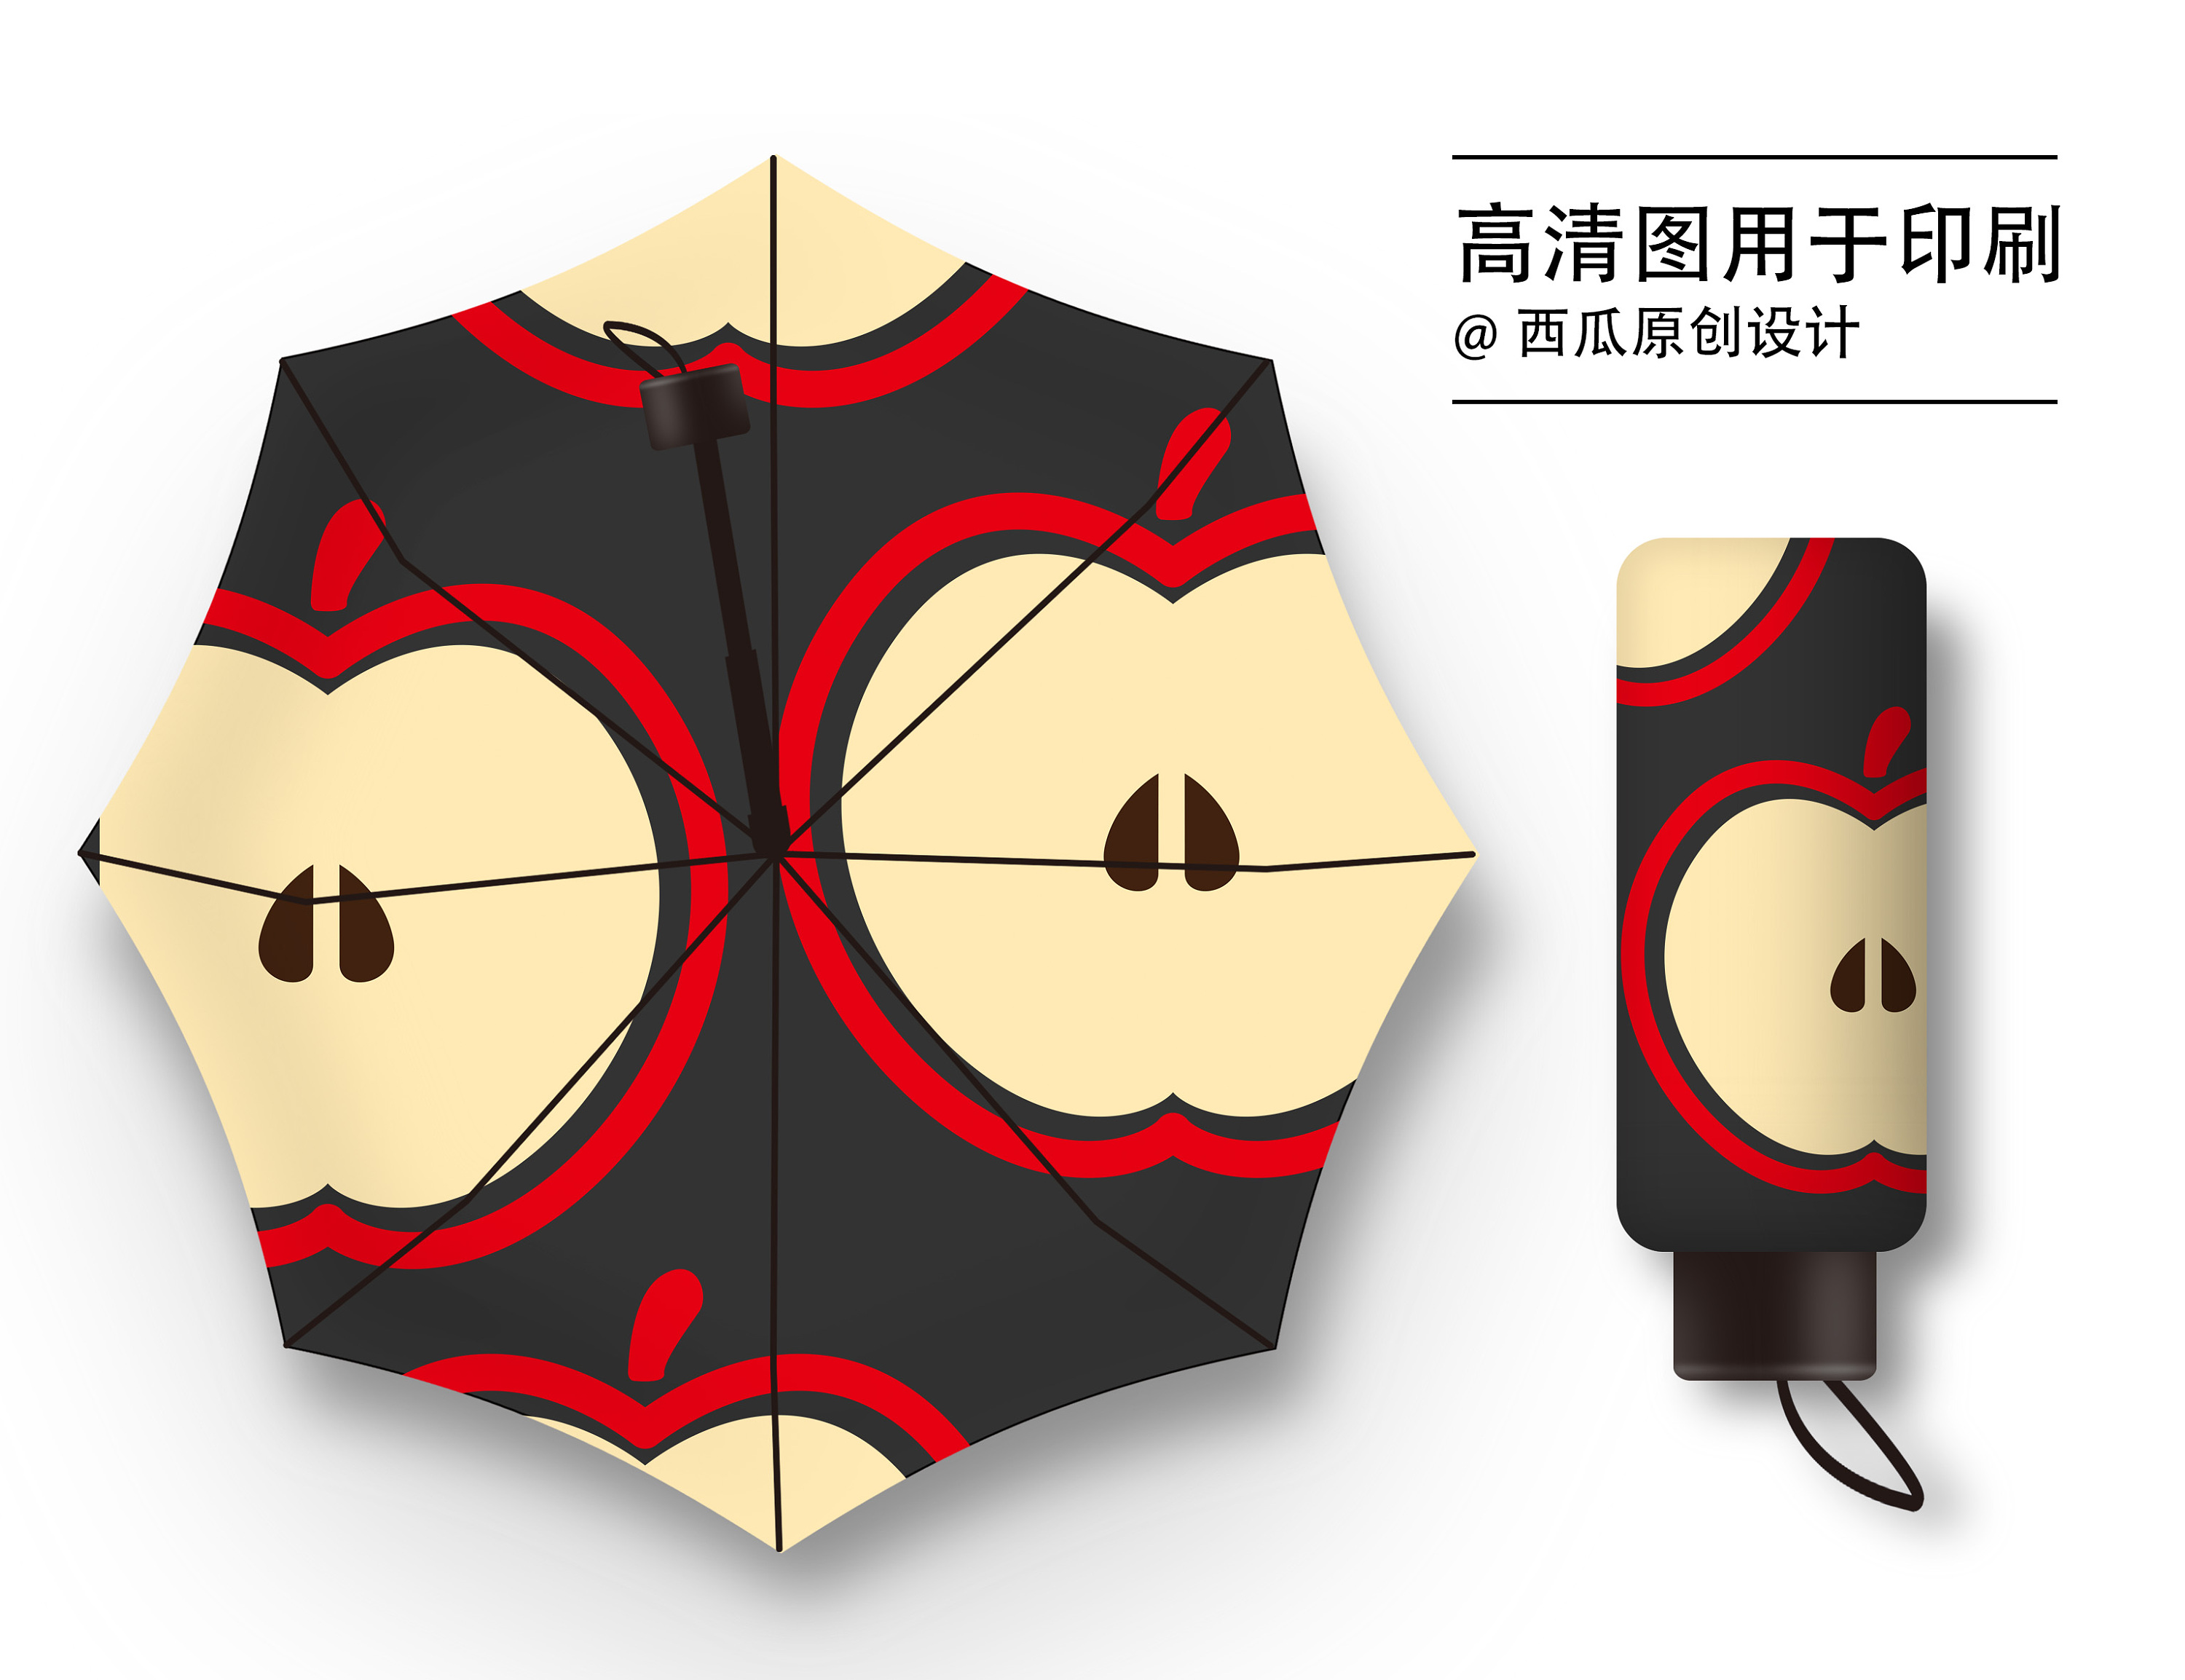 获奖雨伞设计创意图片